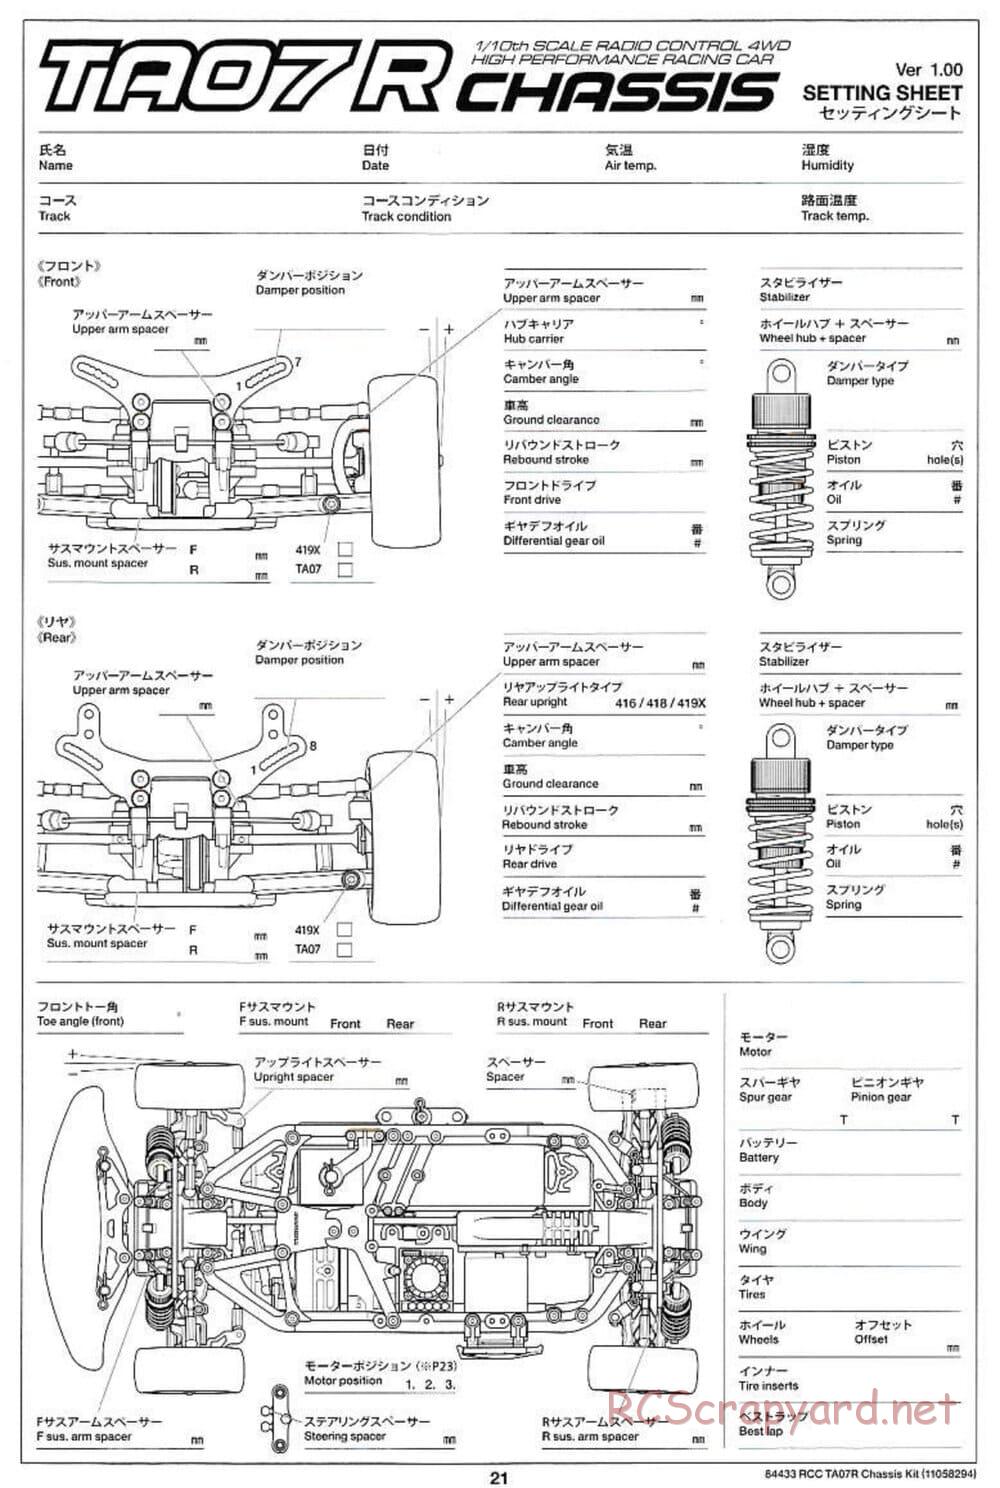 Tamiya - TA07 R Chassis - Manual - Page 21